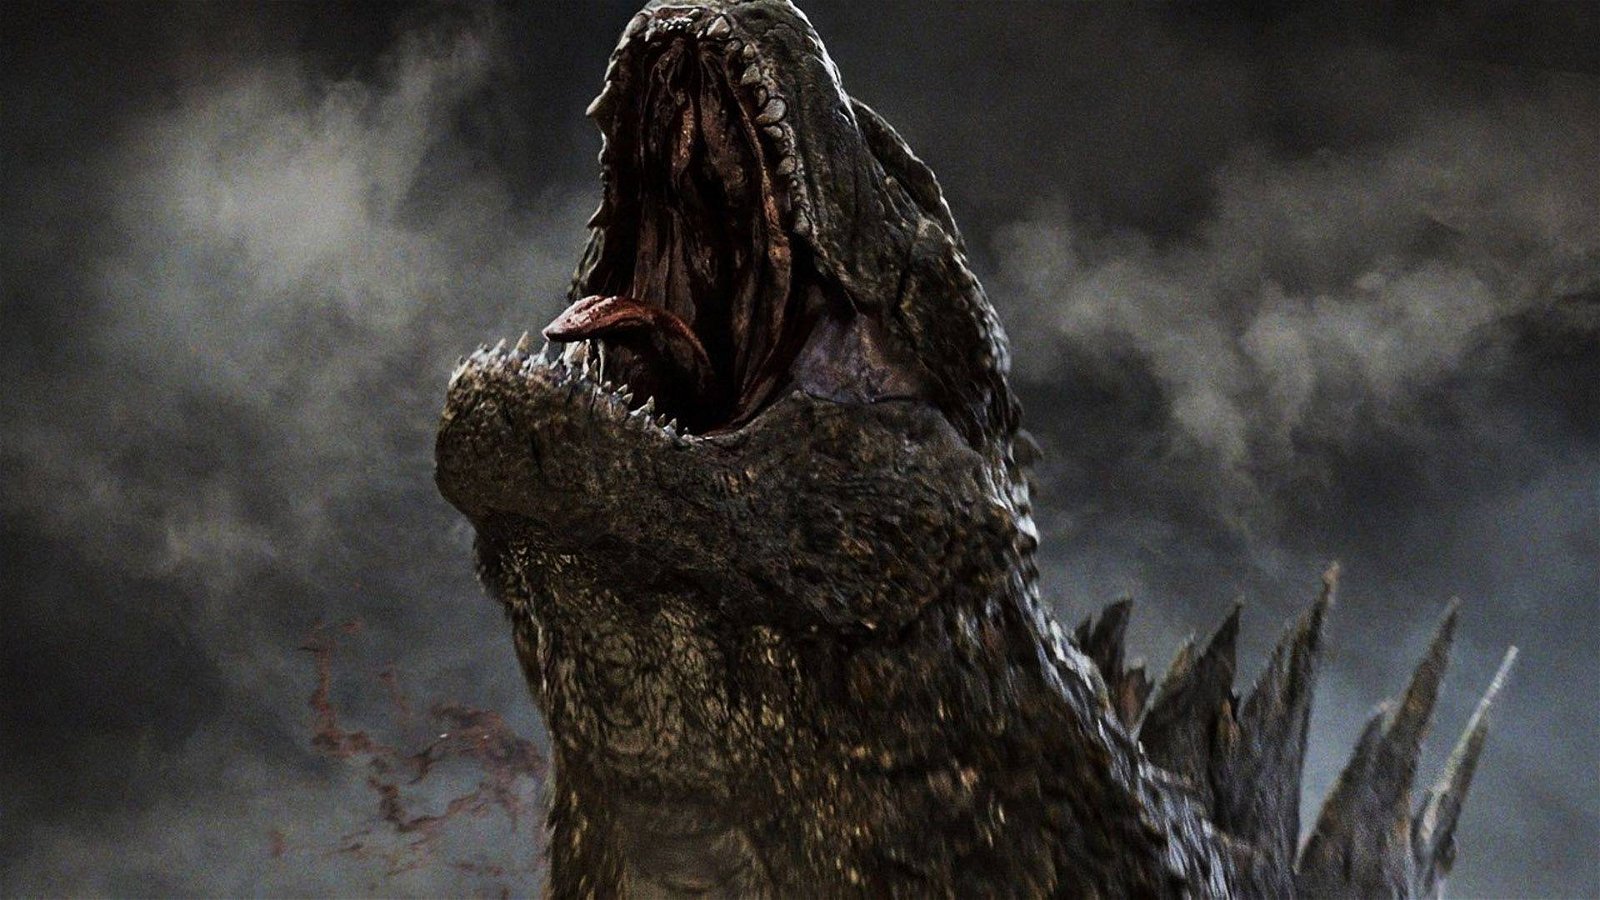 Immagine di Godzilla, sessant'anni tra mito e leggenda ora pronto a tornare